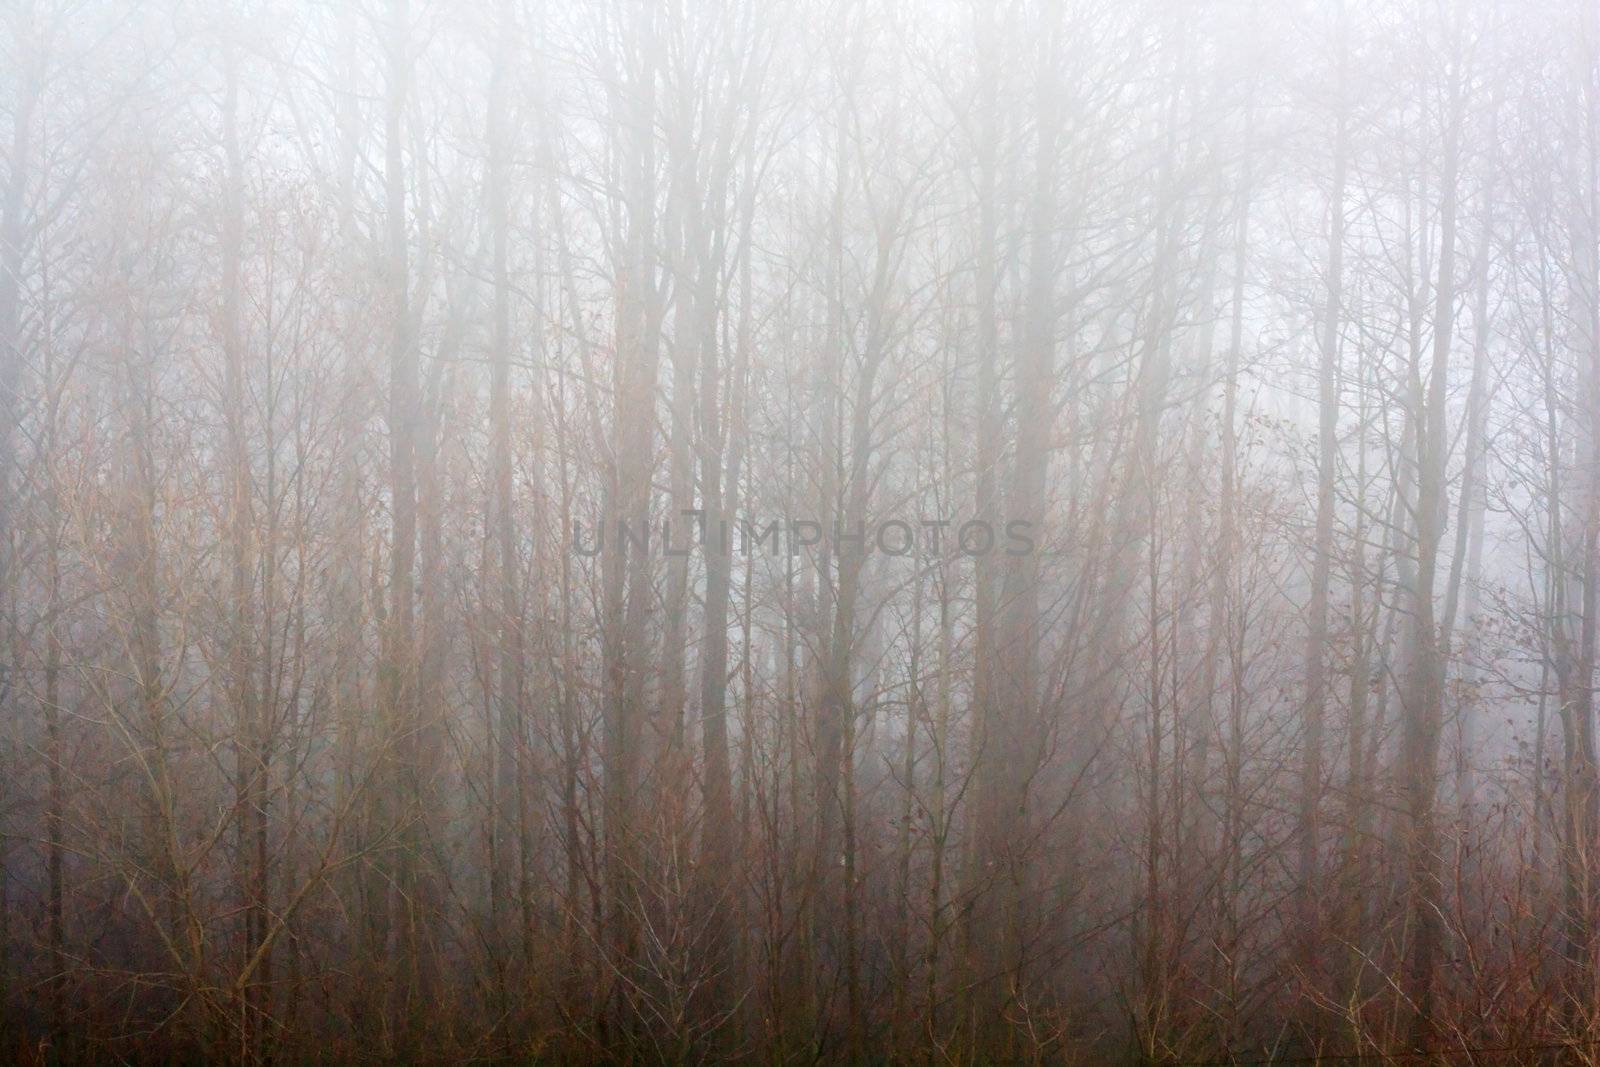 Trees in fog 